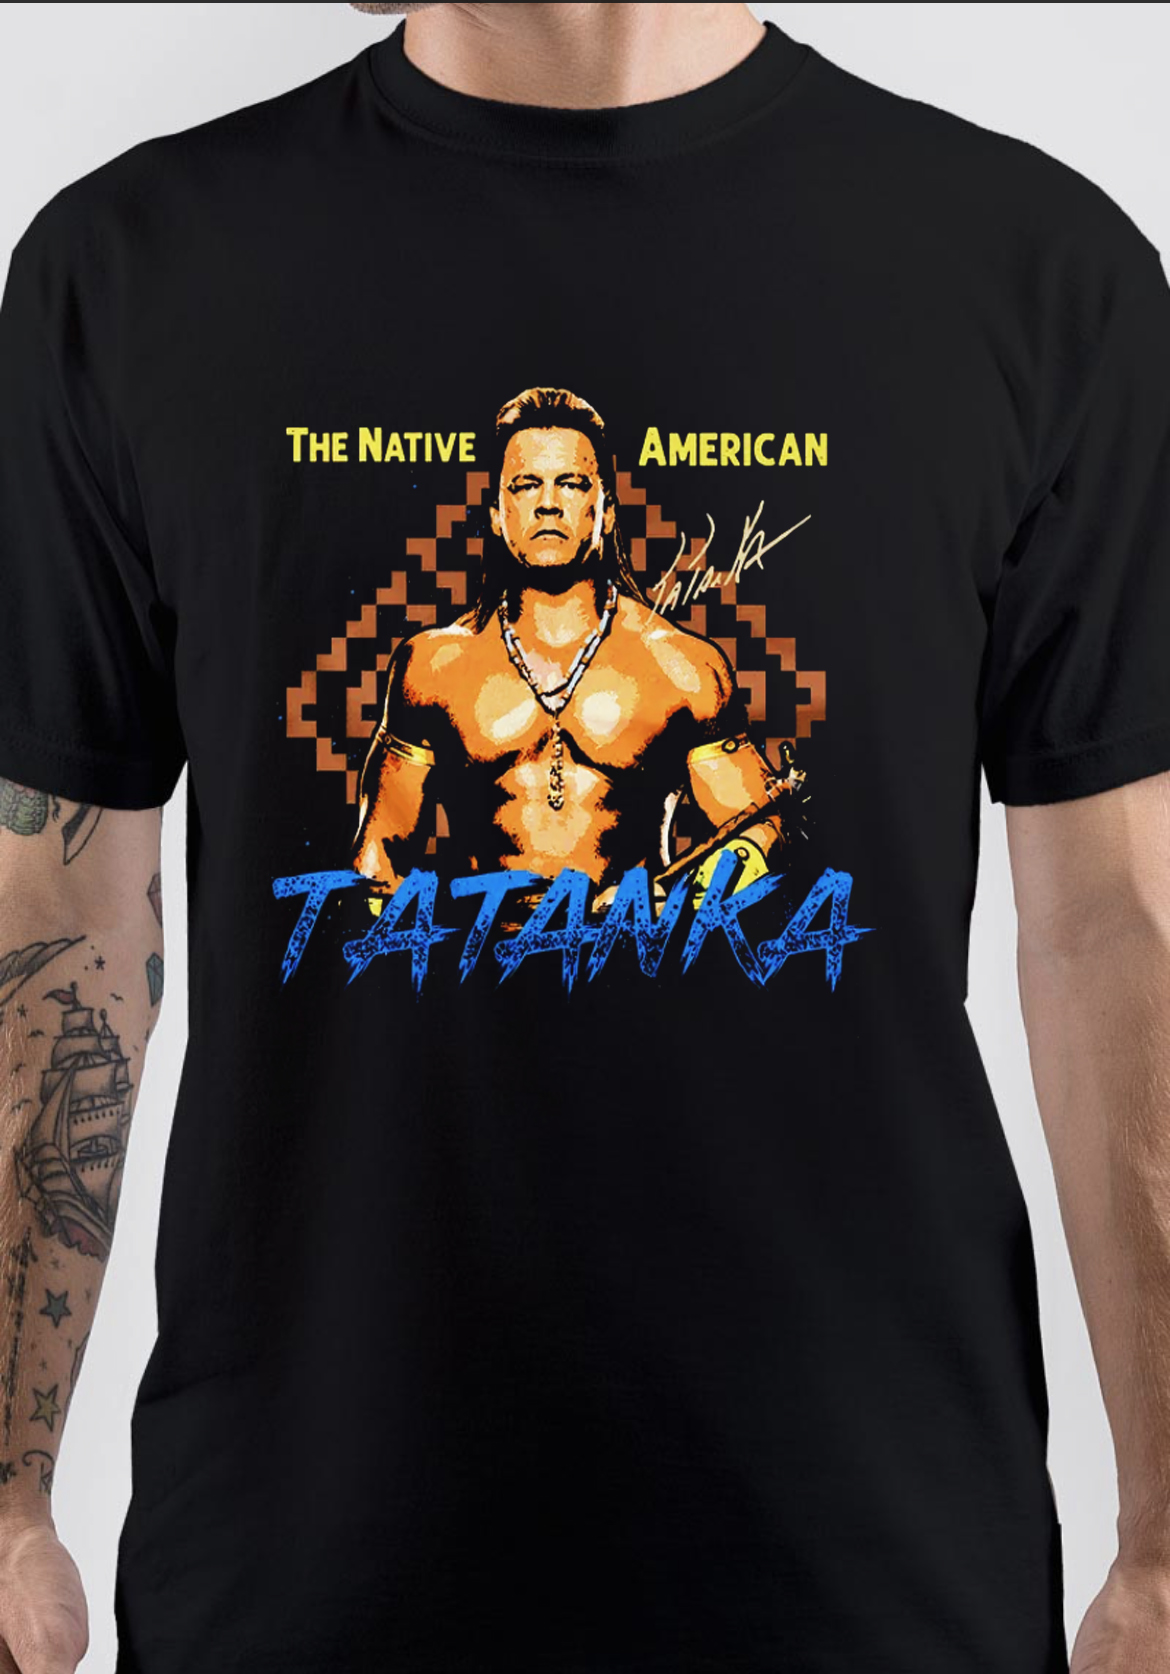 Tatanka T-Shirt And Merchandise